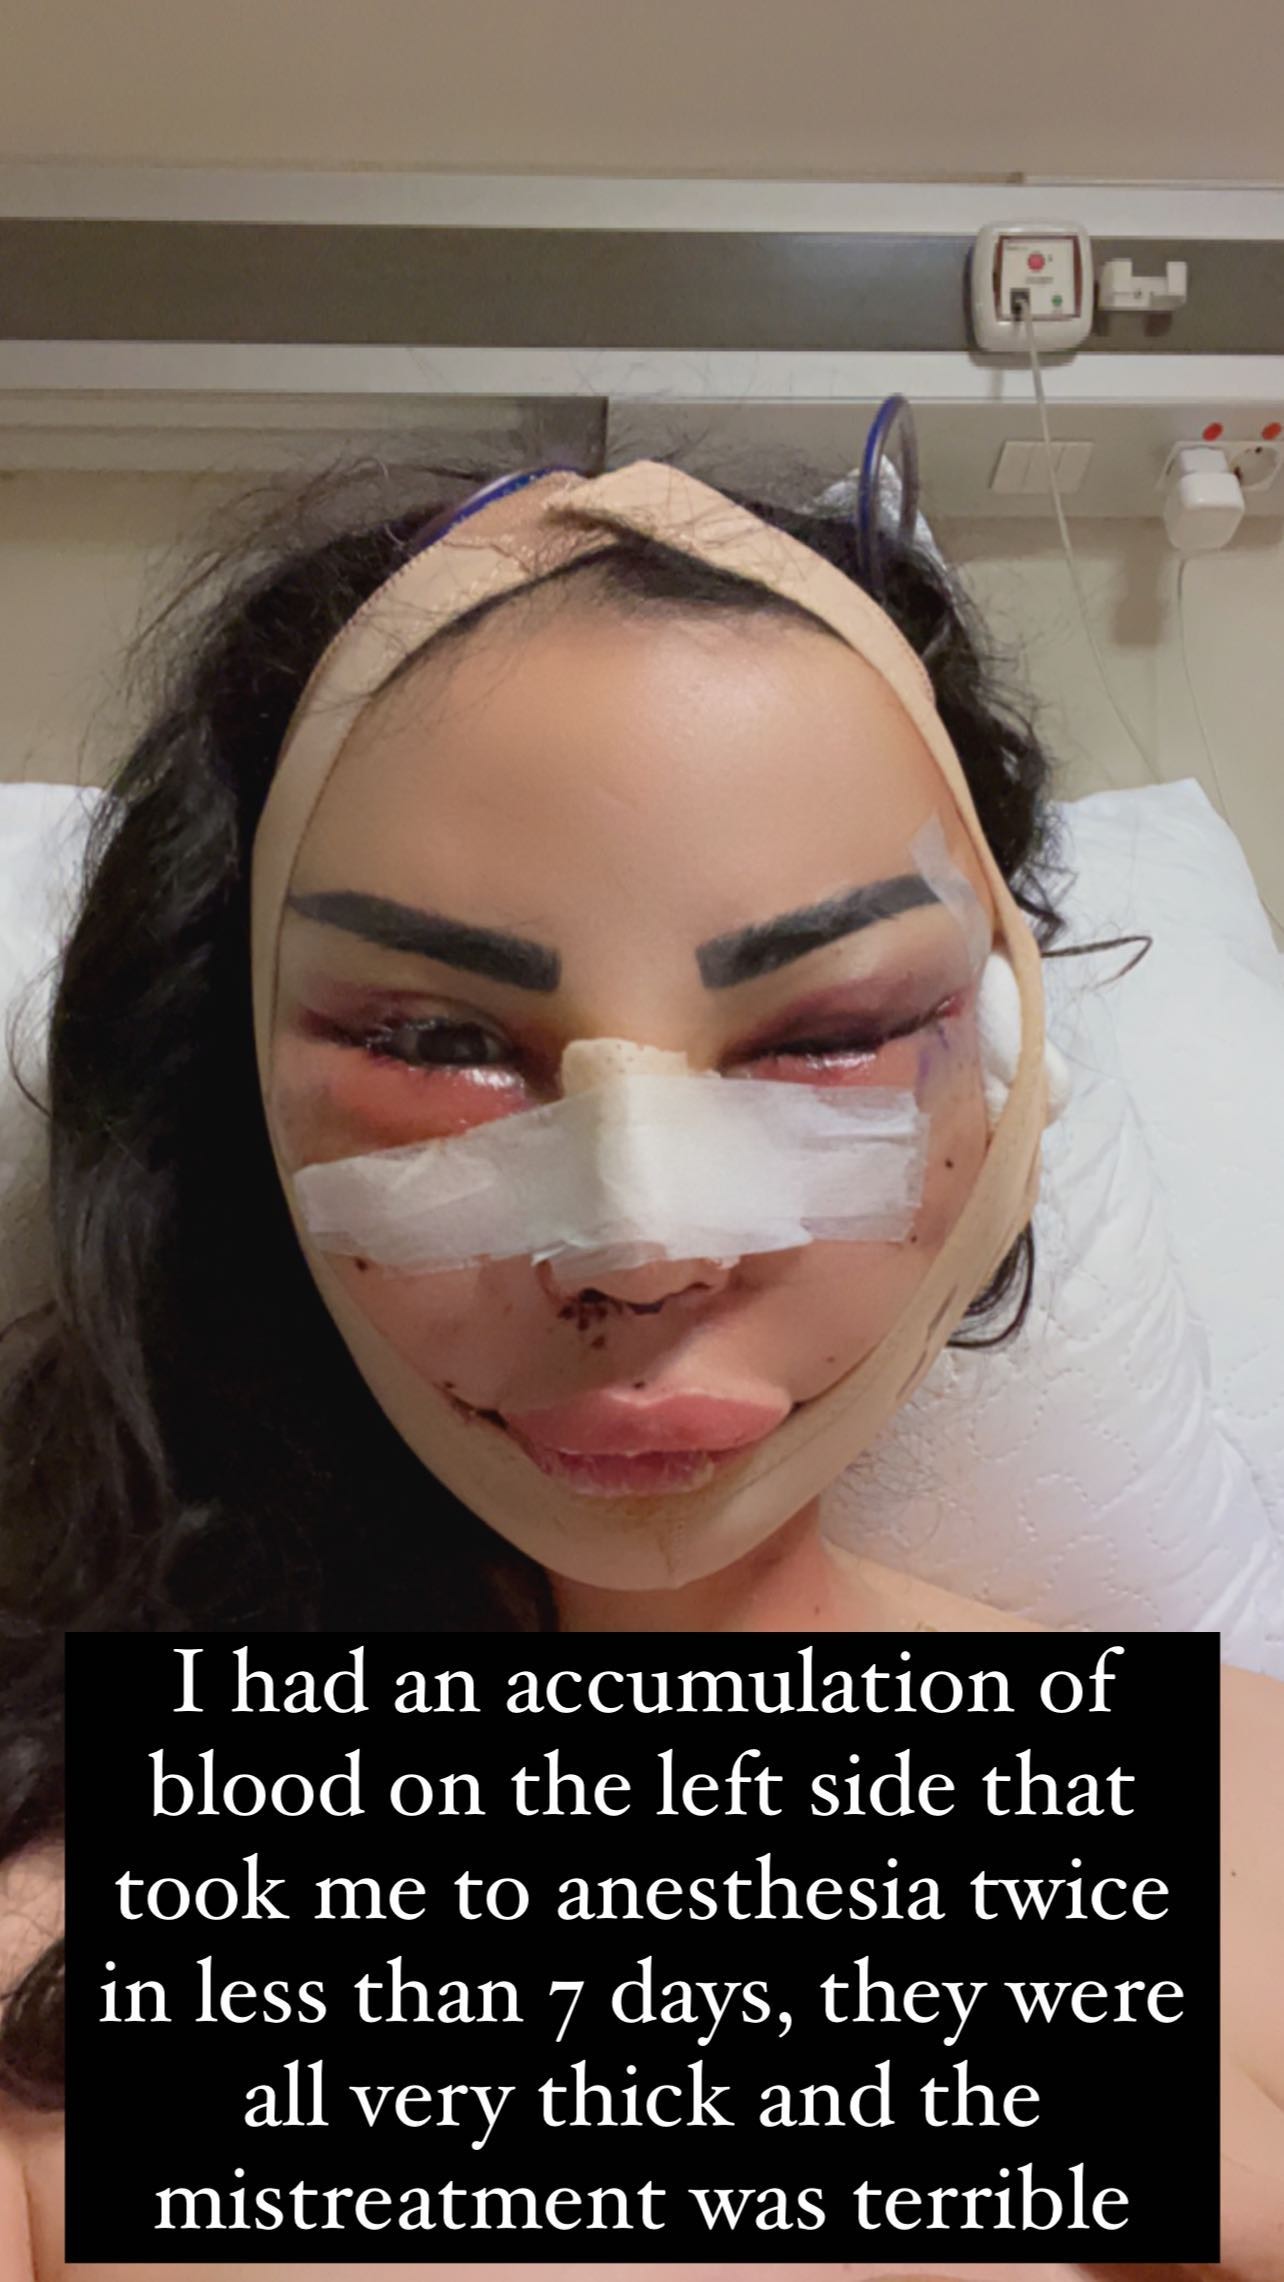 Modelo Jennifer Pamplona denuncia violência cirúrgica na Turquia (Foto: Reprodução/Instagram)